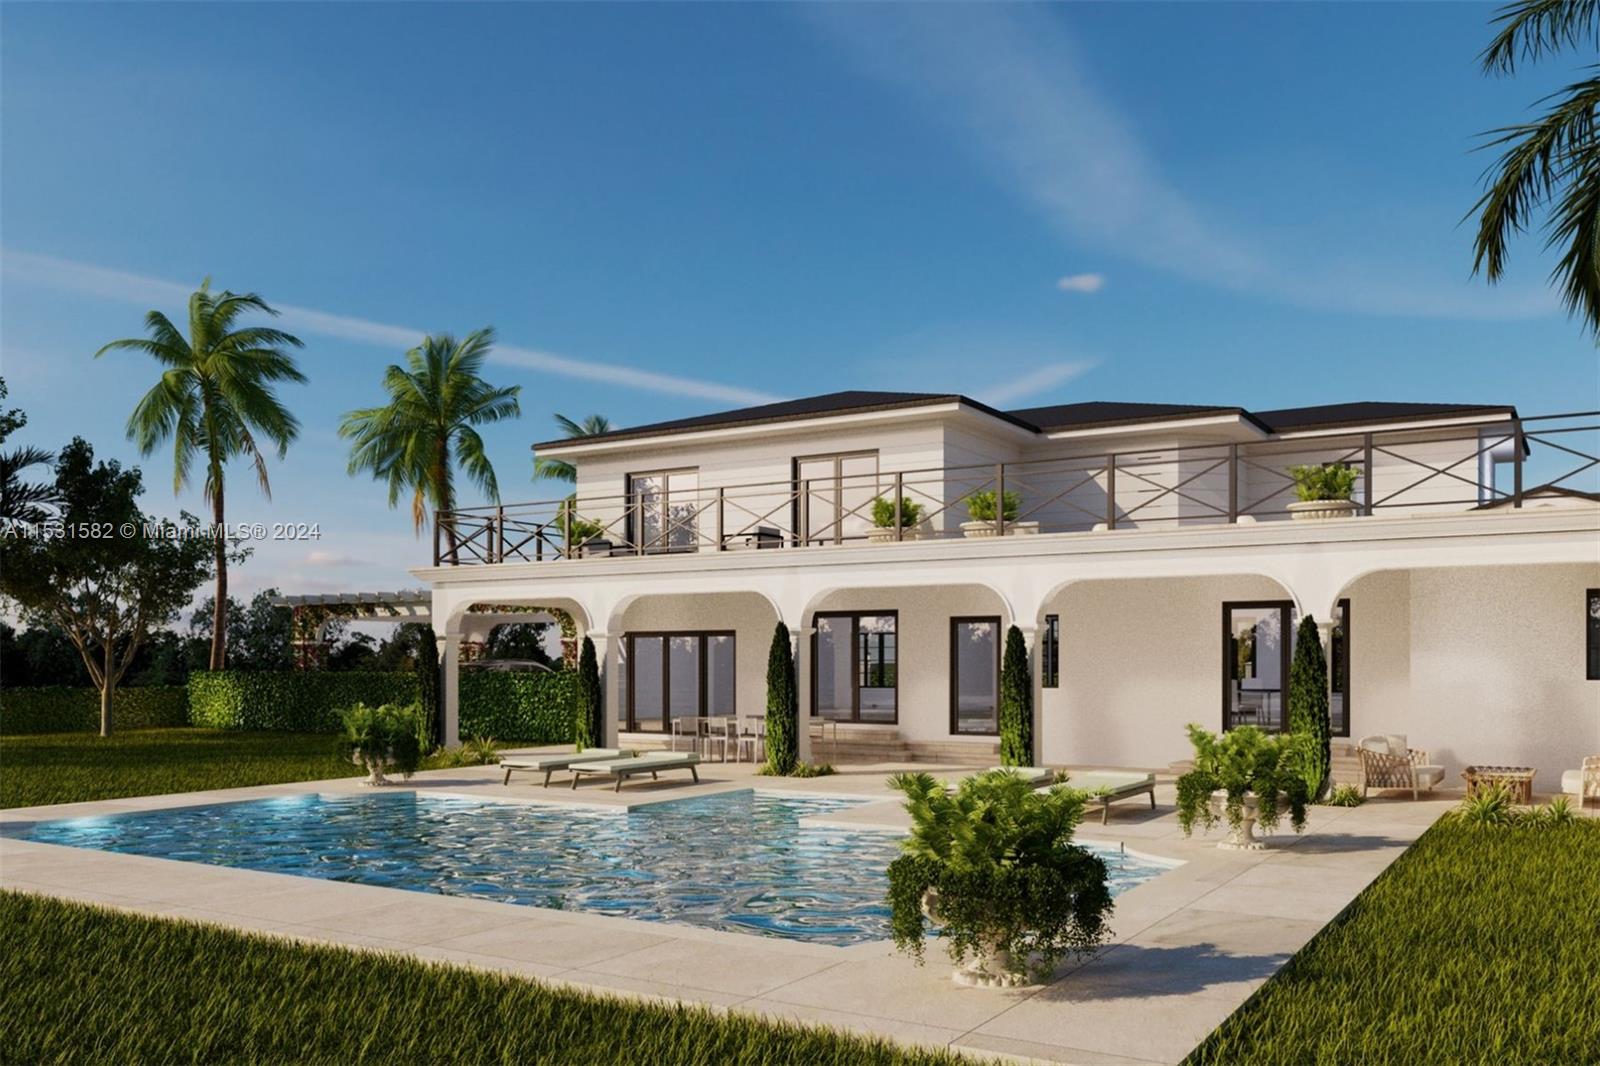 Property for Sale at 6080 Alton Rd, Miami Beach, Miami-Dade County, Florida - Bedrooms: 5 
Bathrooms: 3  - $3,459,000